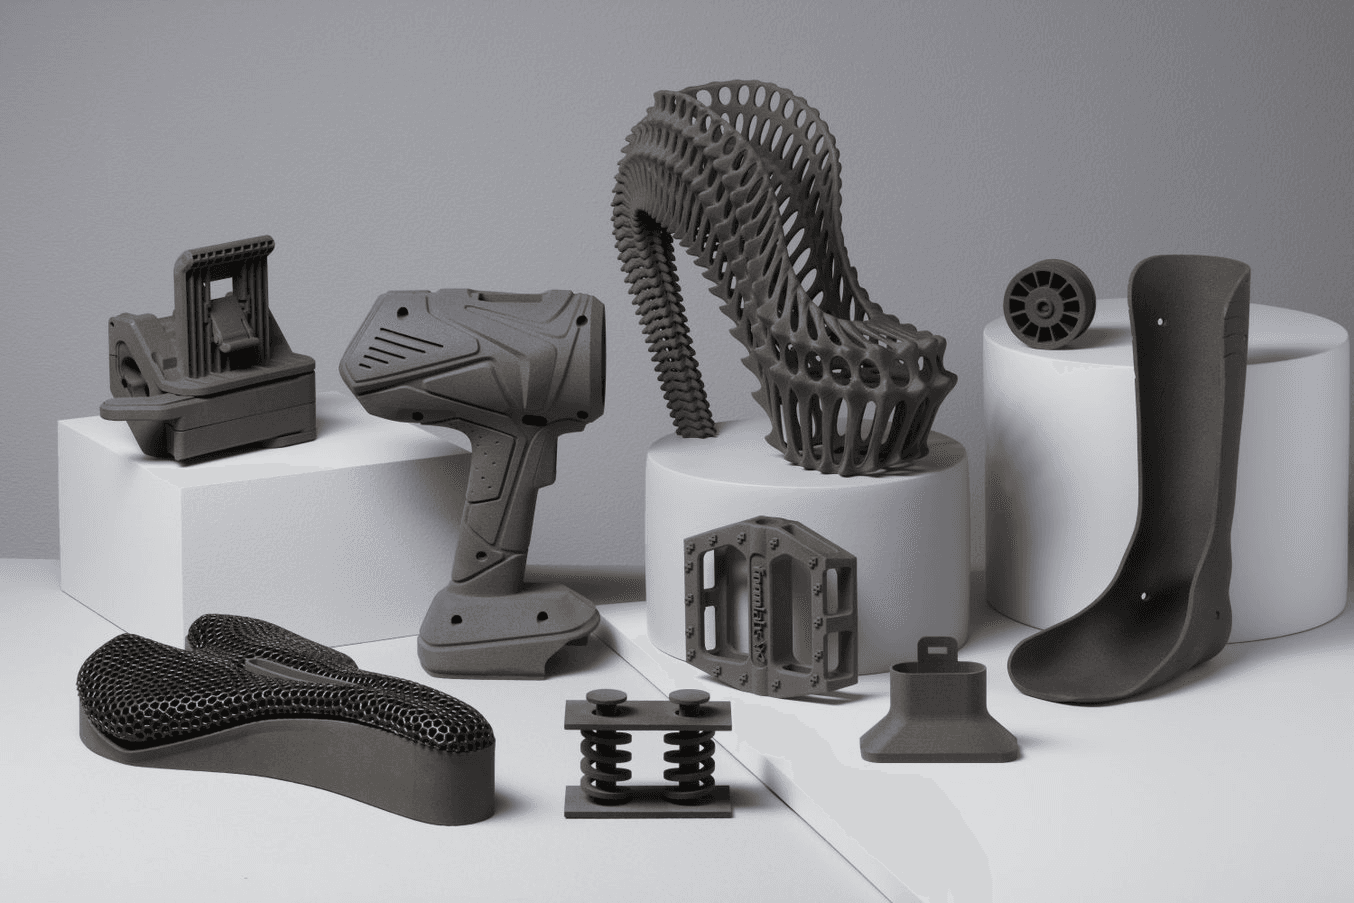 3D-gedruckte Prototypen via Rapid Prototyping